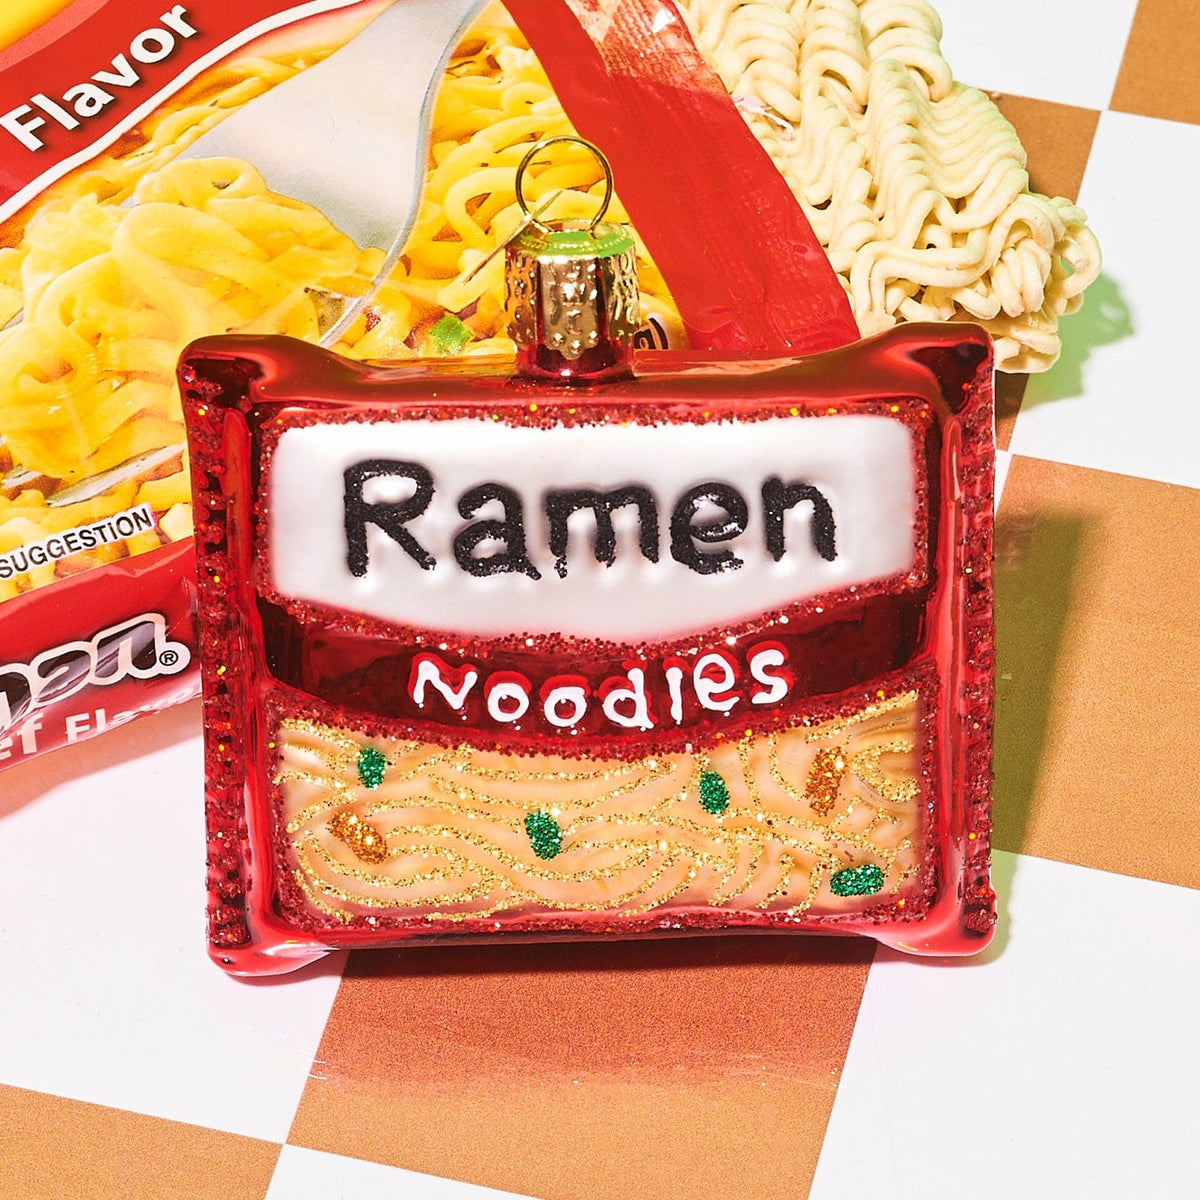 Ramen Noodles Ornament 32573 0623 - Ornament23 -